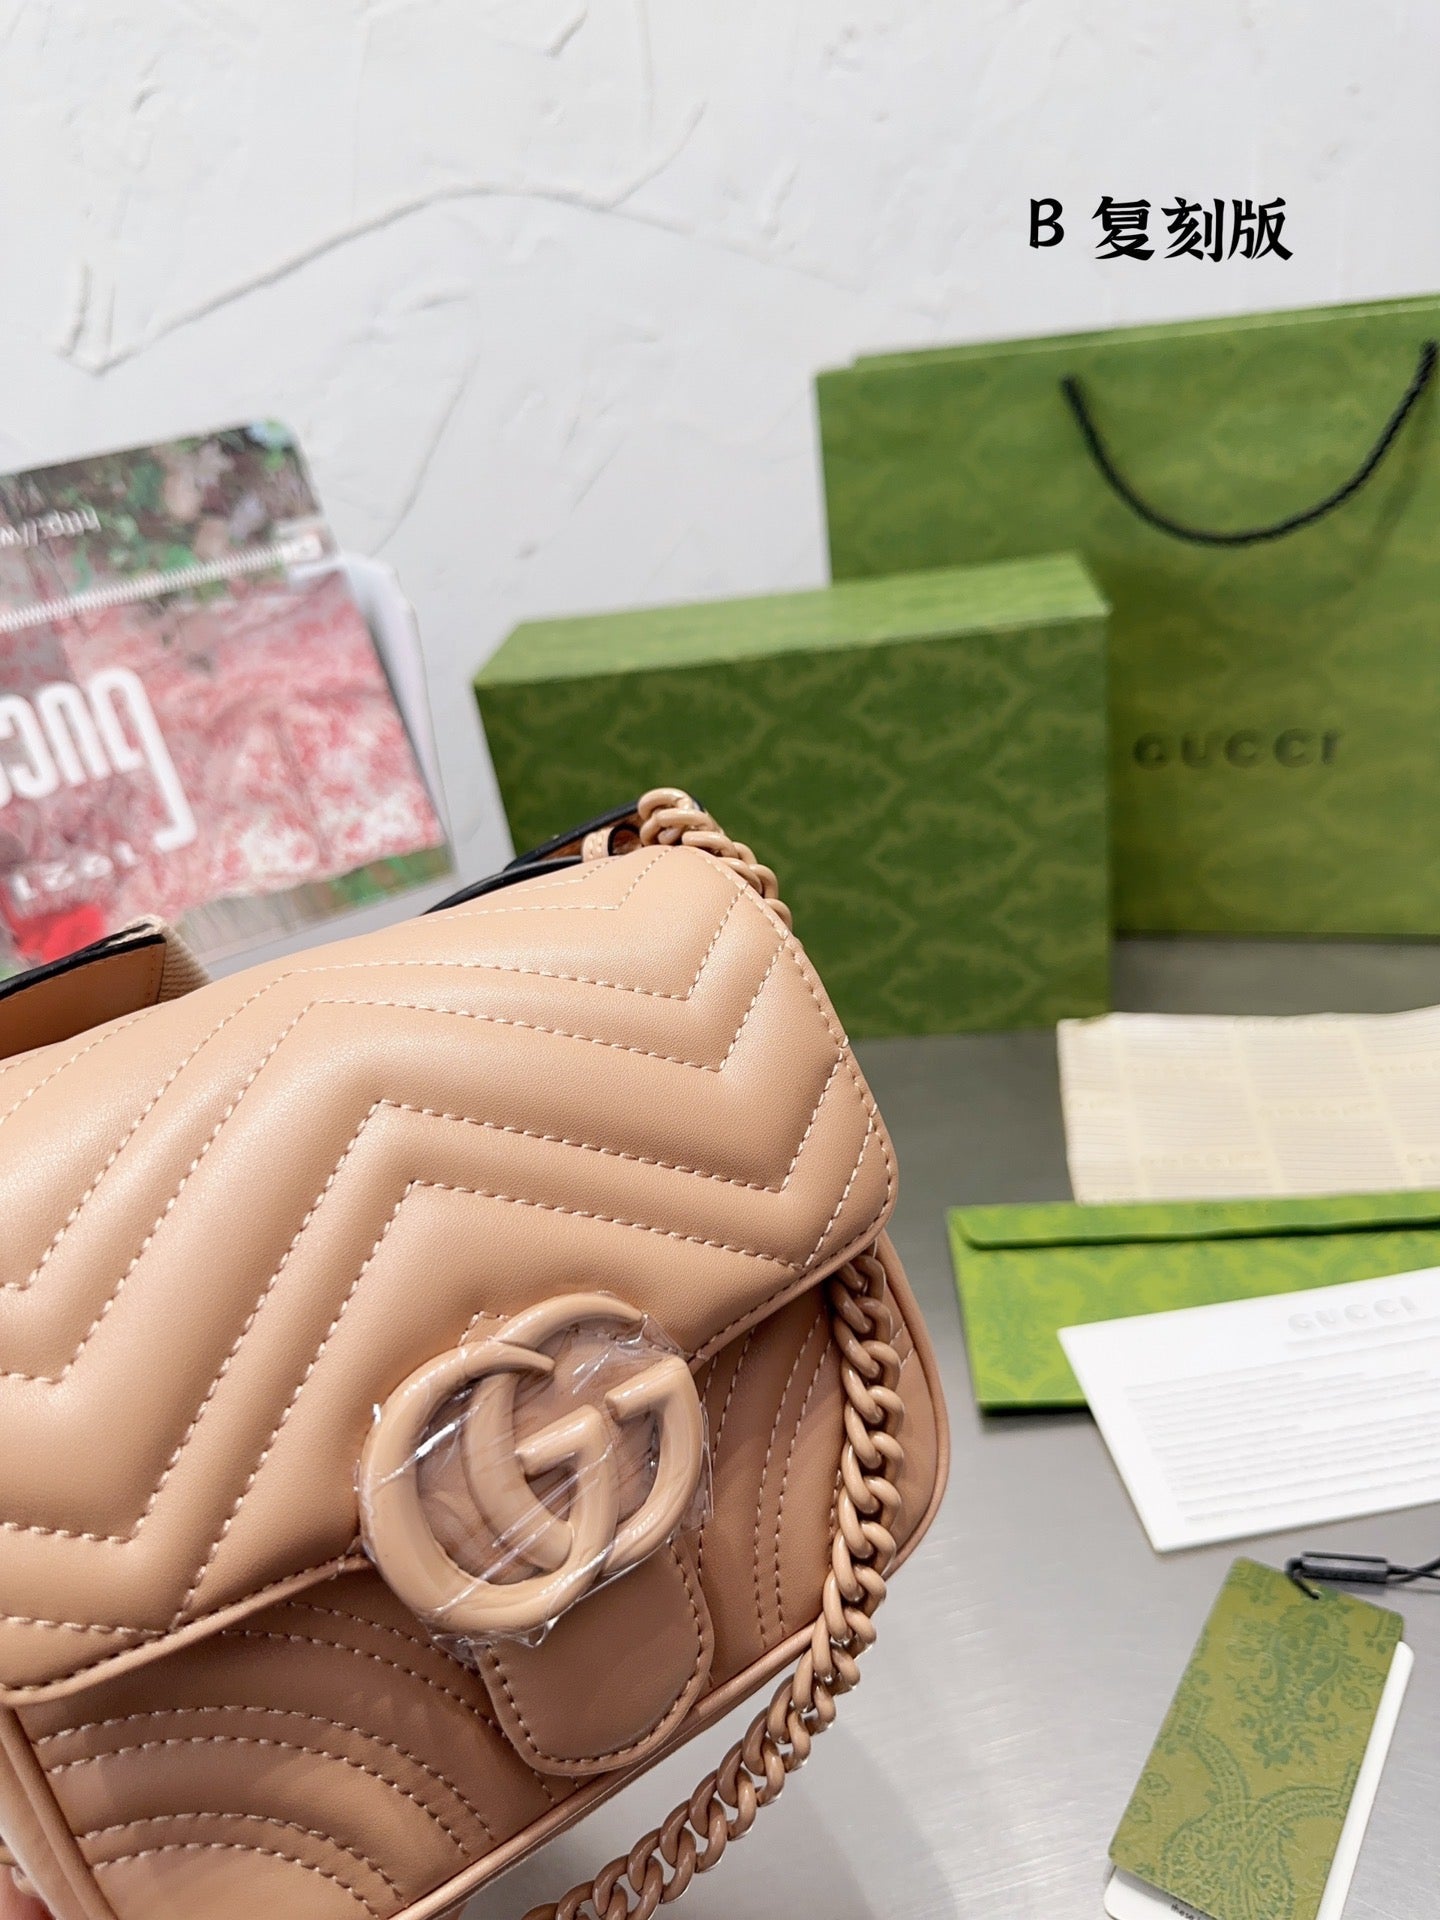 Gucci  Marmont Matelassè Handbag (Shoulder Bag Cross body)